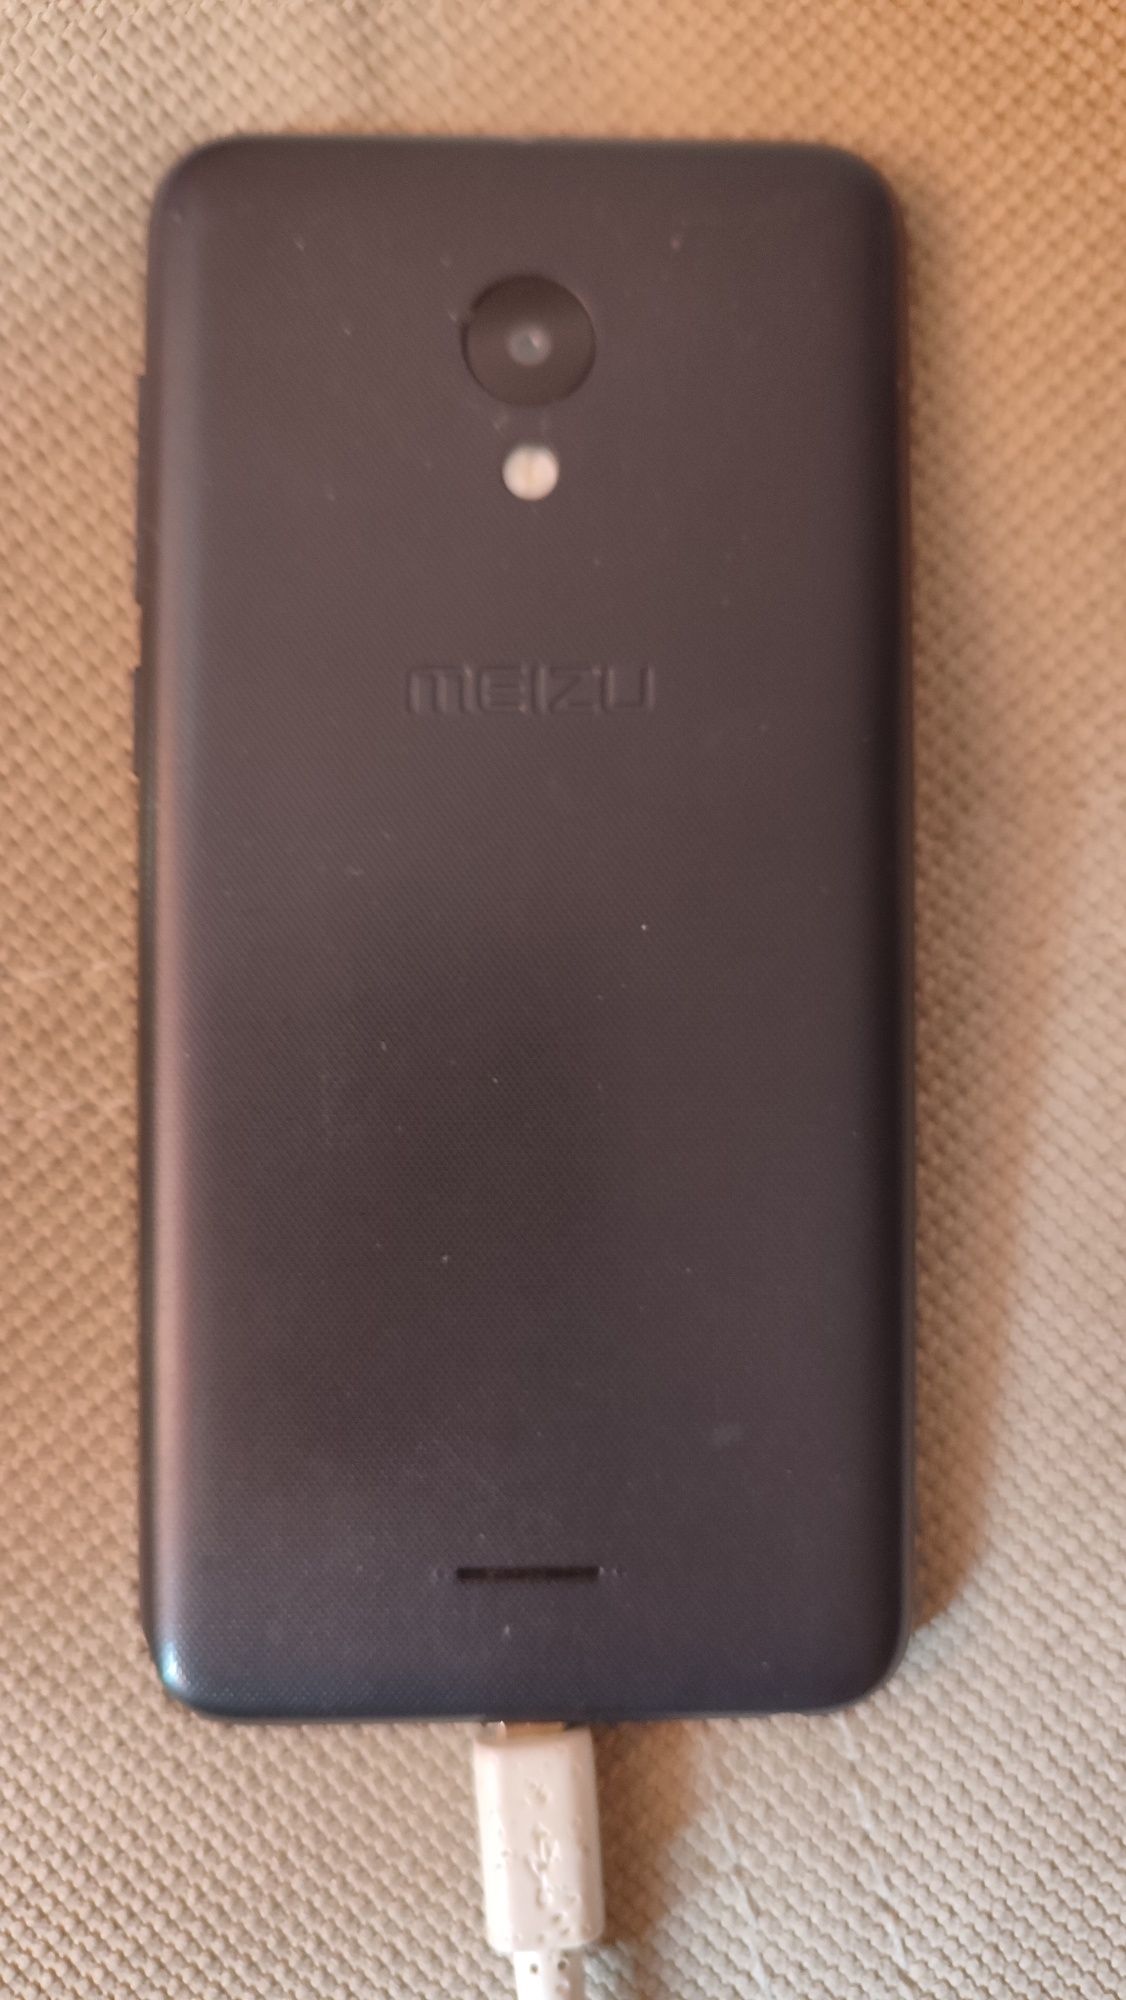 Продам Meizu C9 телефон по сути новый, просто есть трещина на экране